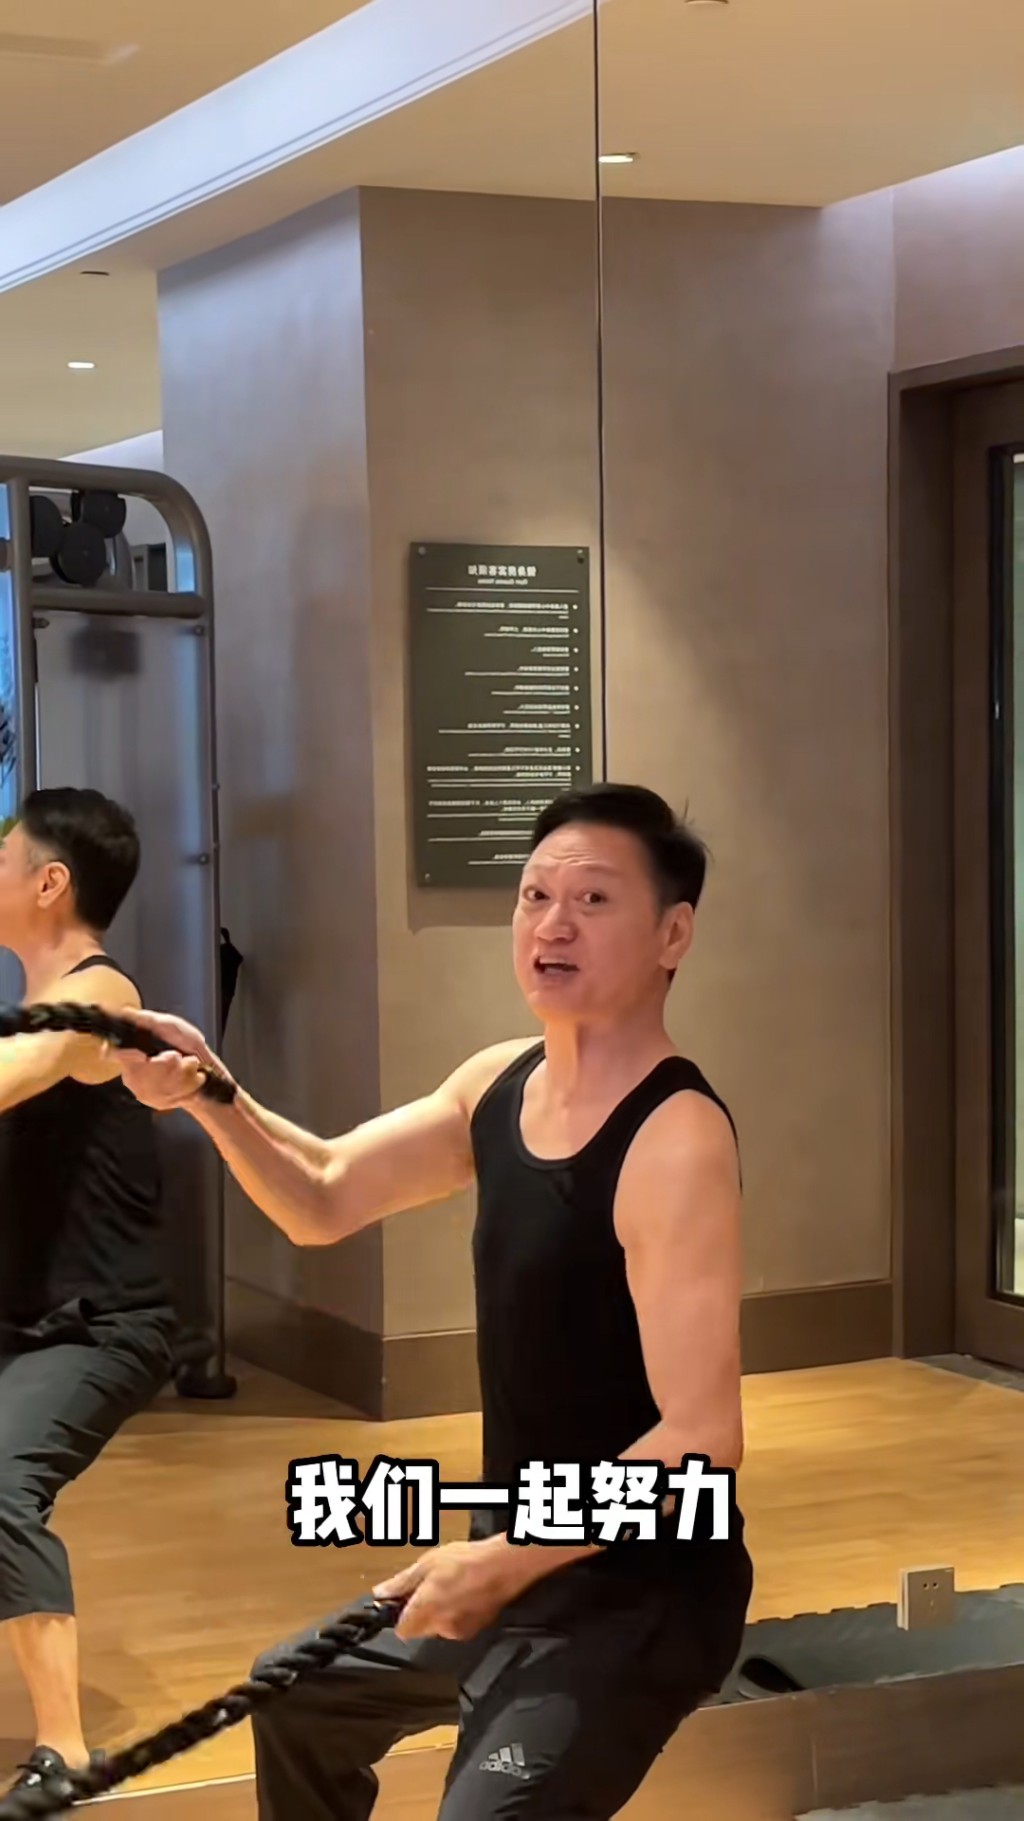 陶大宇曾在网上分享健身片。